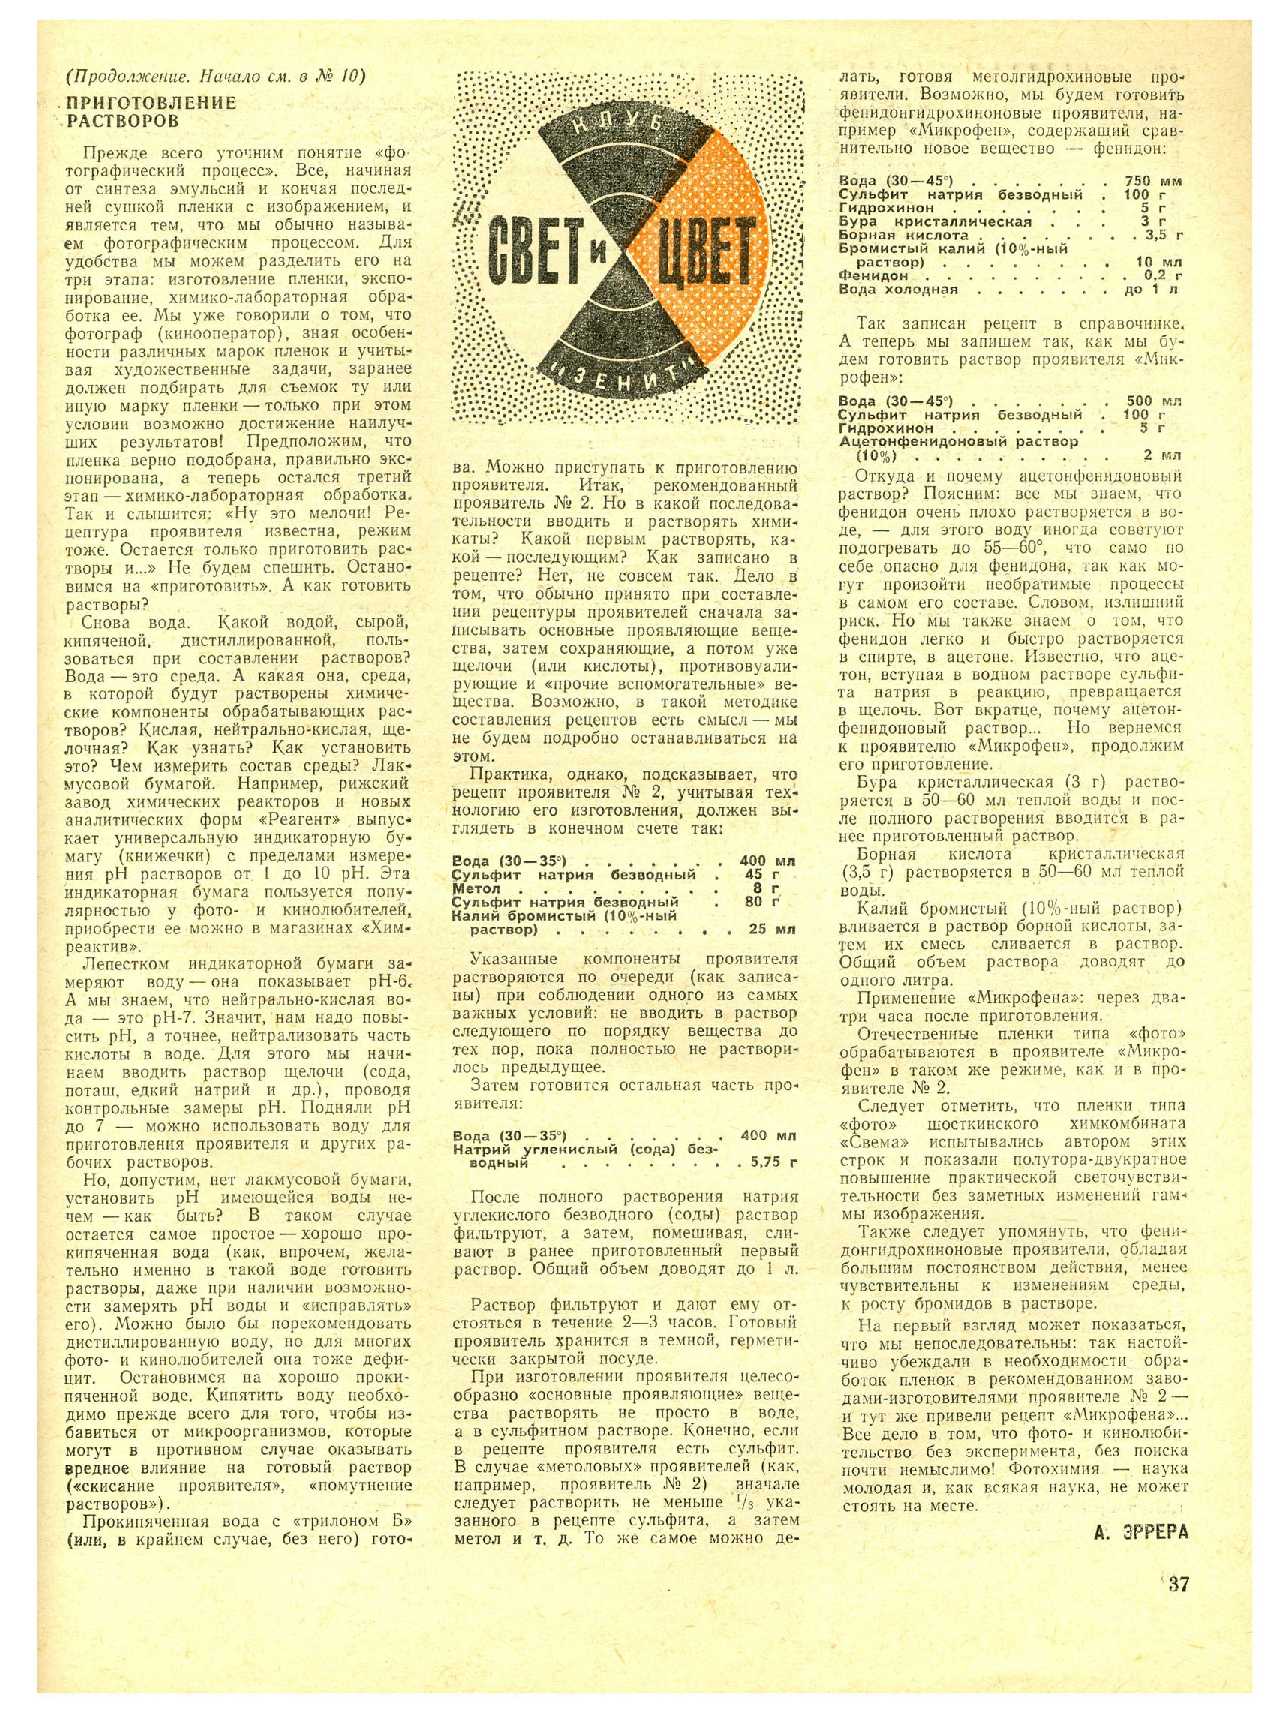 МК 12, 1972, 37 c.